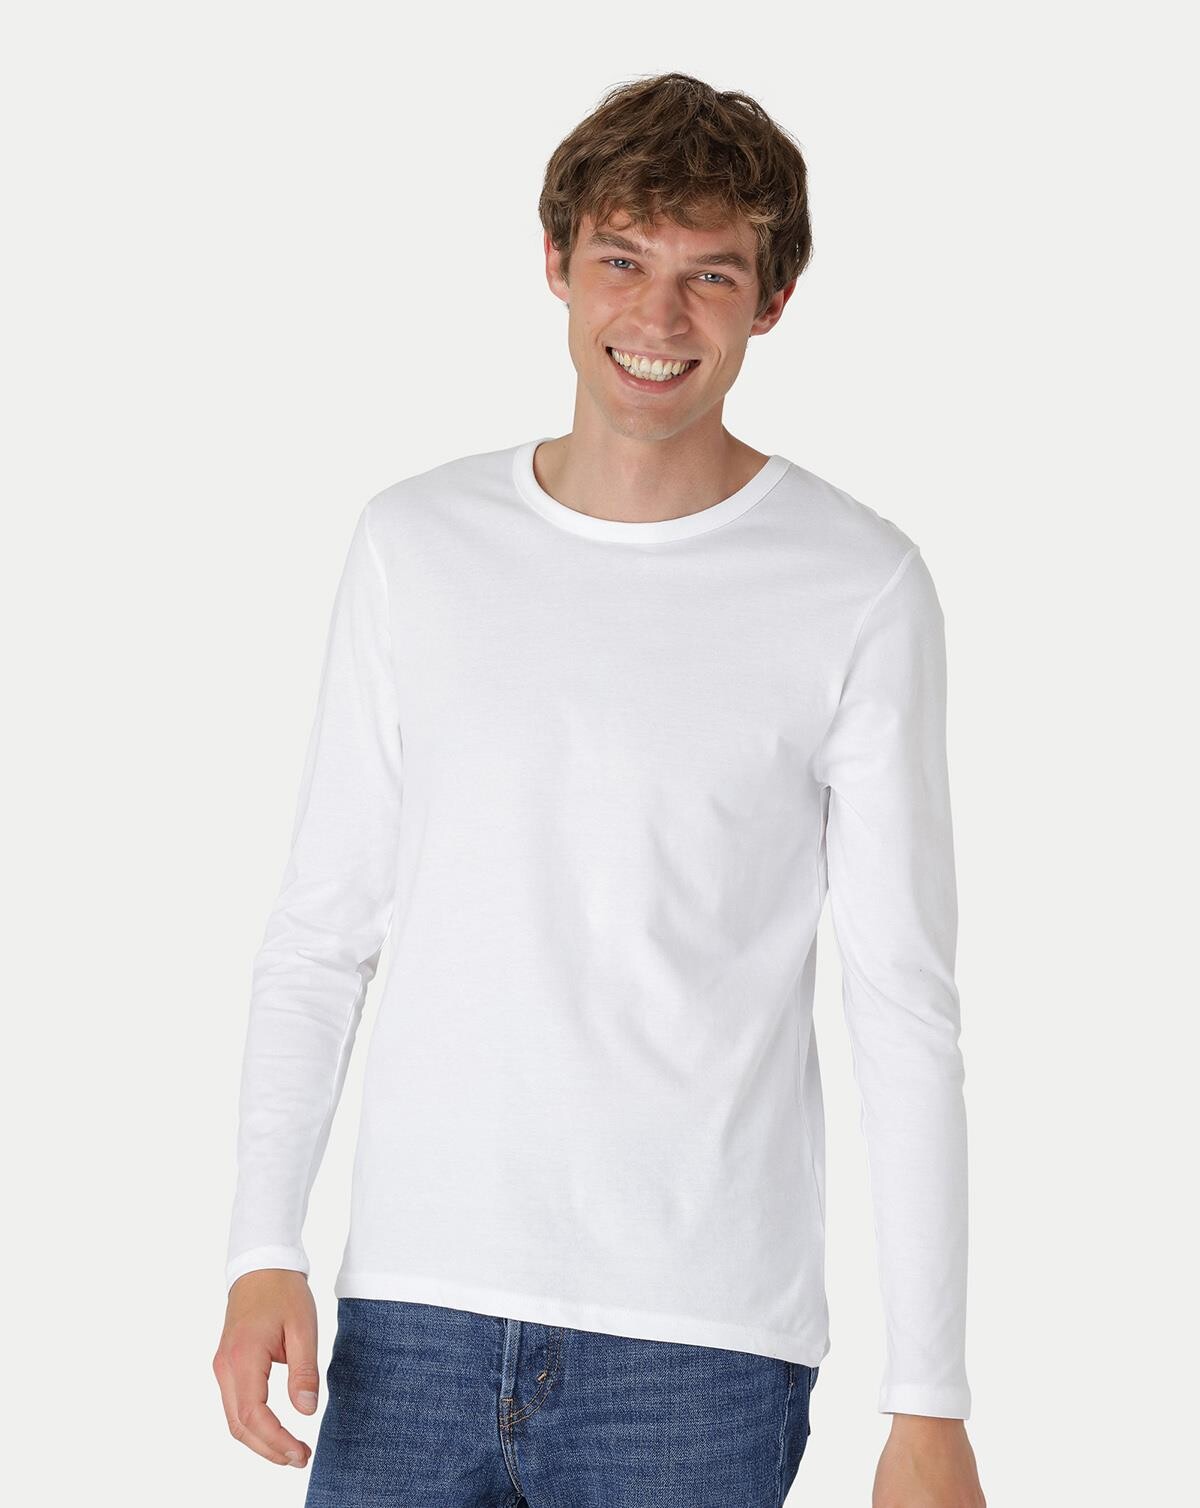 Neutral Økologisk Langærmet T-shirt (Hvid, M)